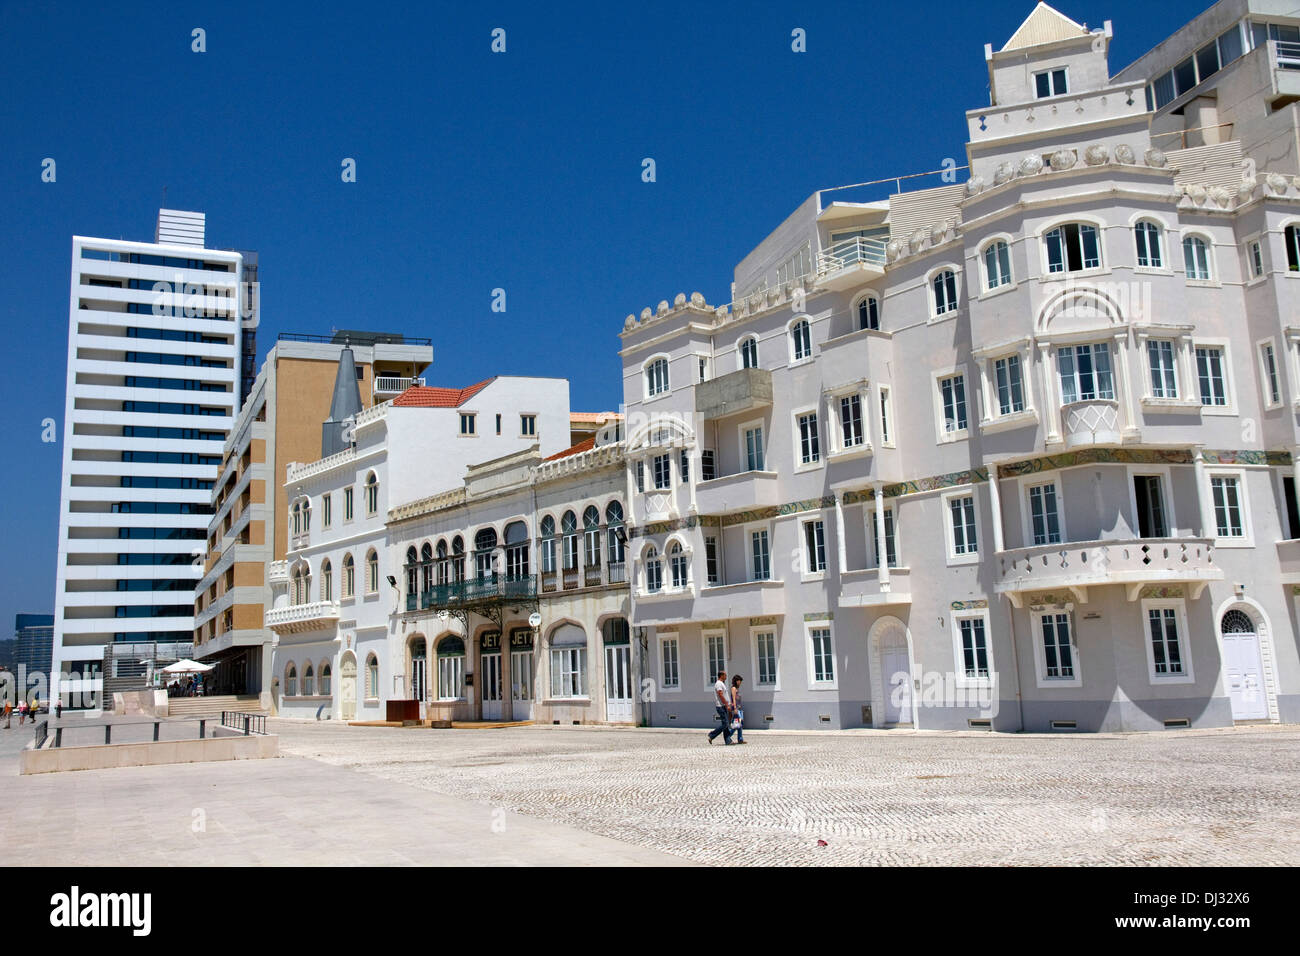 Anciens et nouveaux bâtiments de mer. Figueira da Foz, station balnéaire sur la côte Atlantique, Région Centre, Portugal Banque D'Images